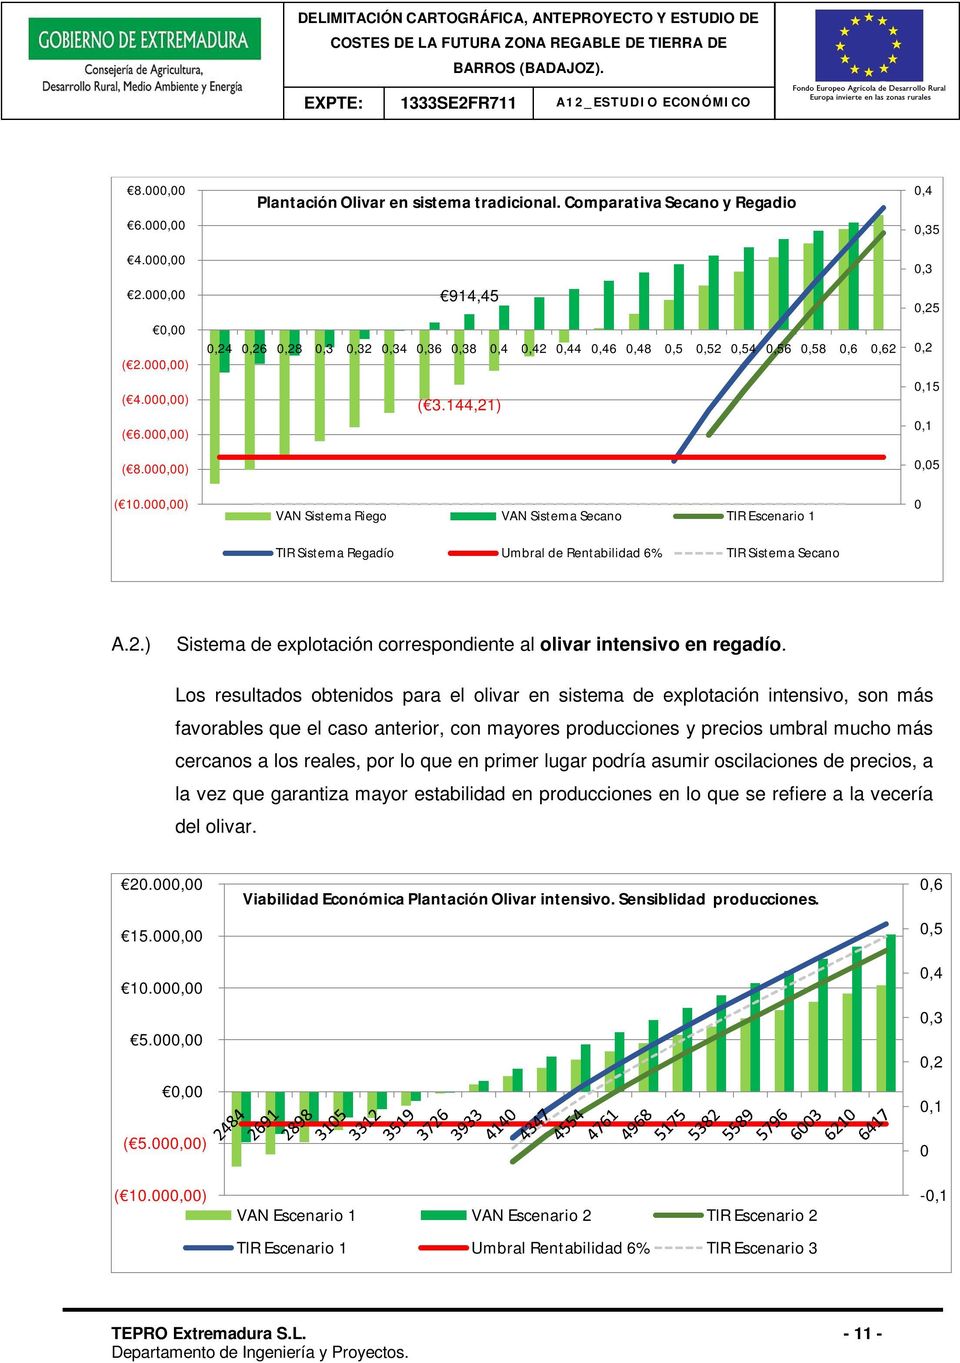 Los resultados obtenidos para el olivar en sistema de explotación intensivo, son más favorables que el caso anterior, con mayores producciones y precios umbral mucho más cercanos a los reales, por lo